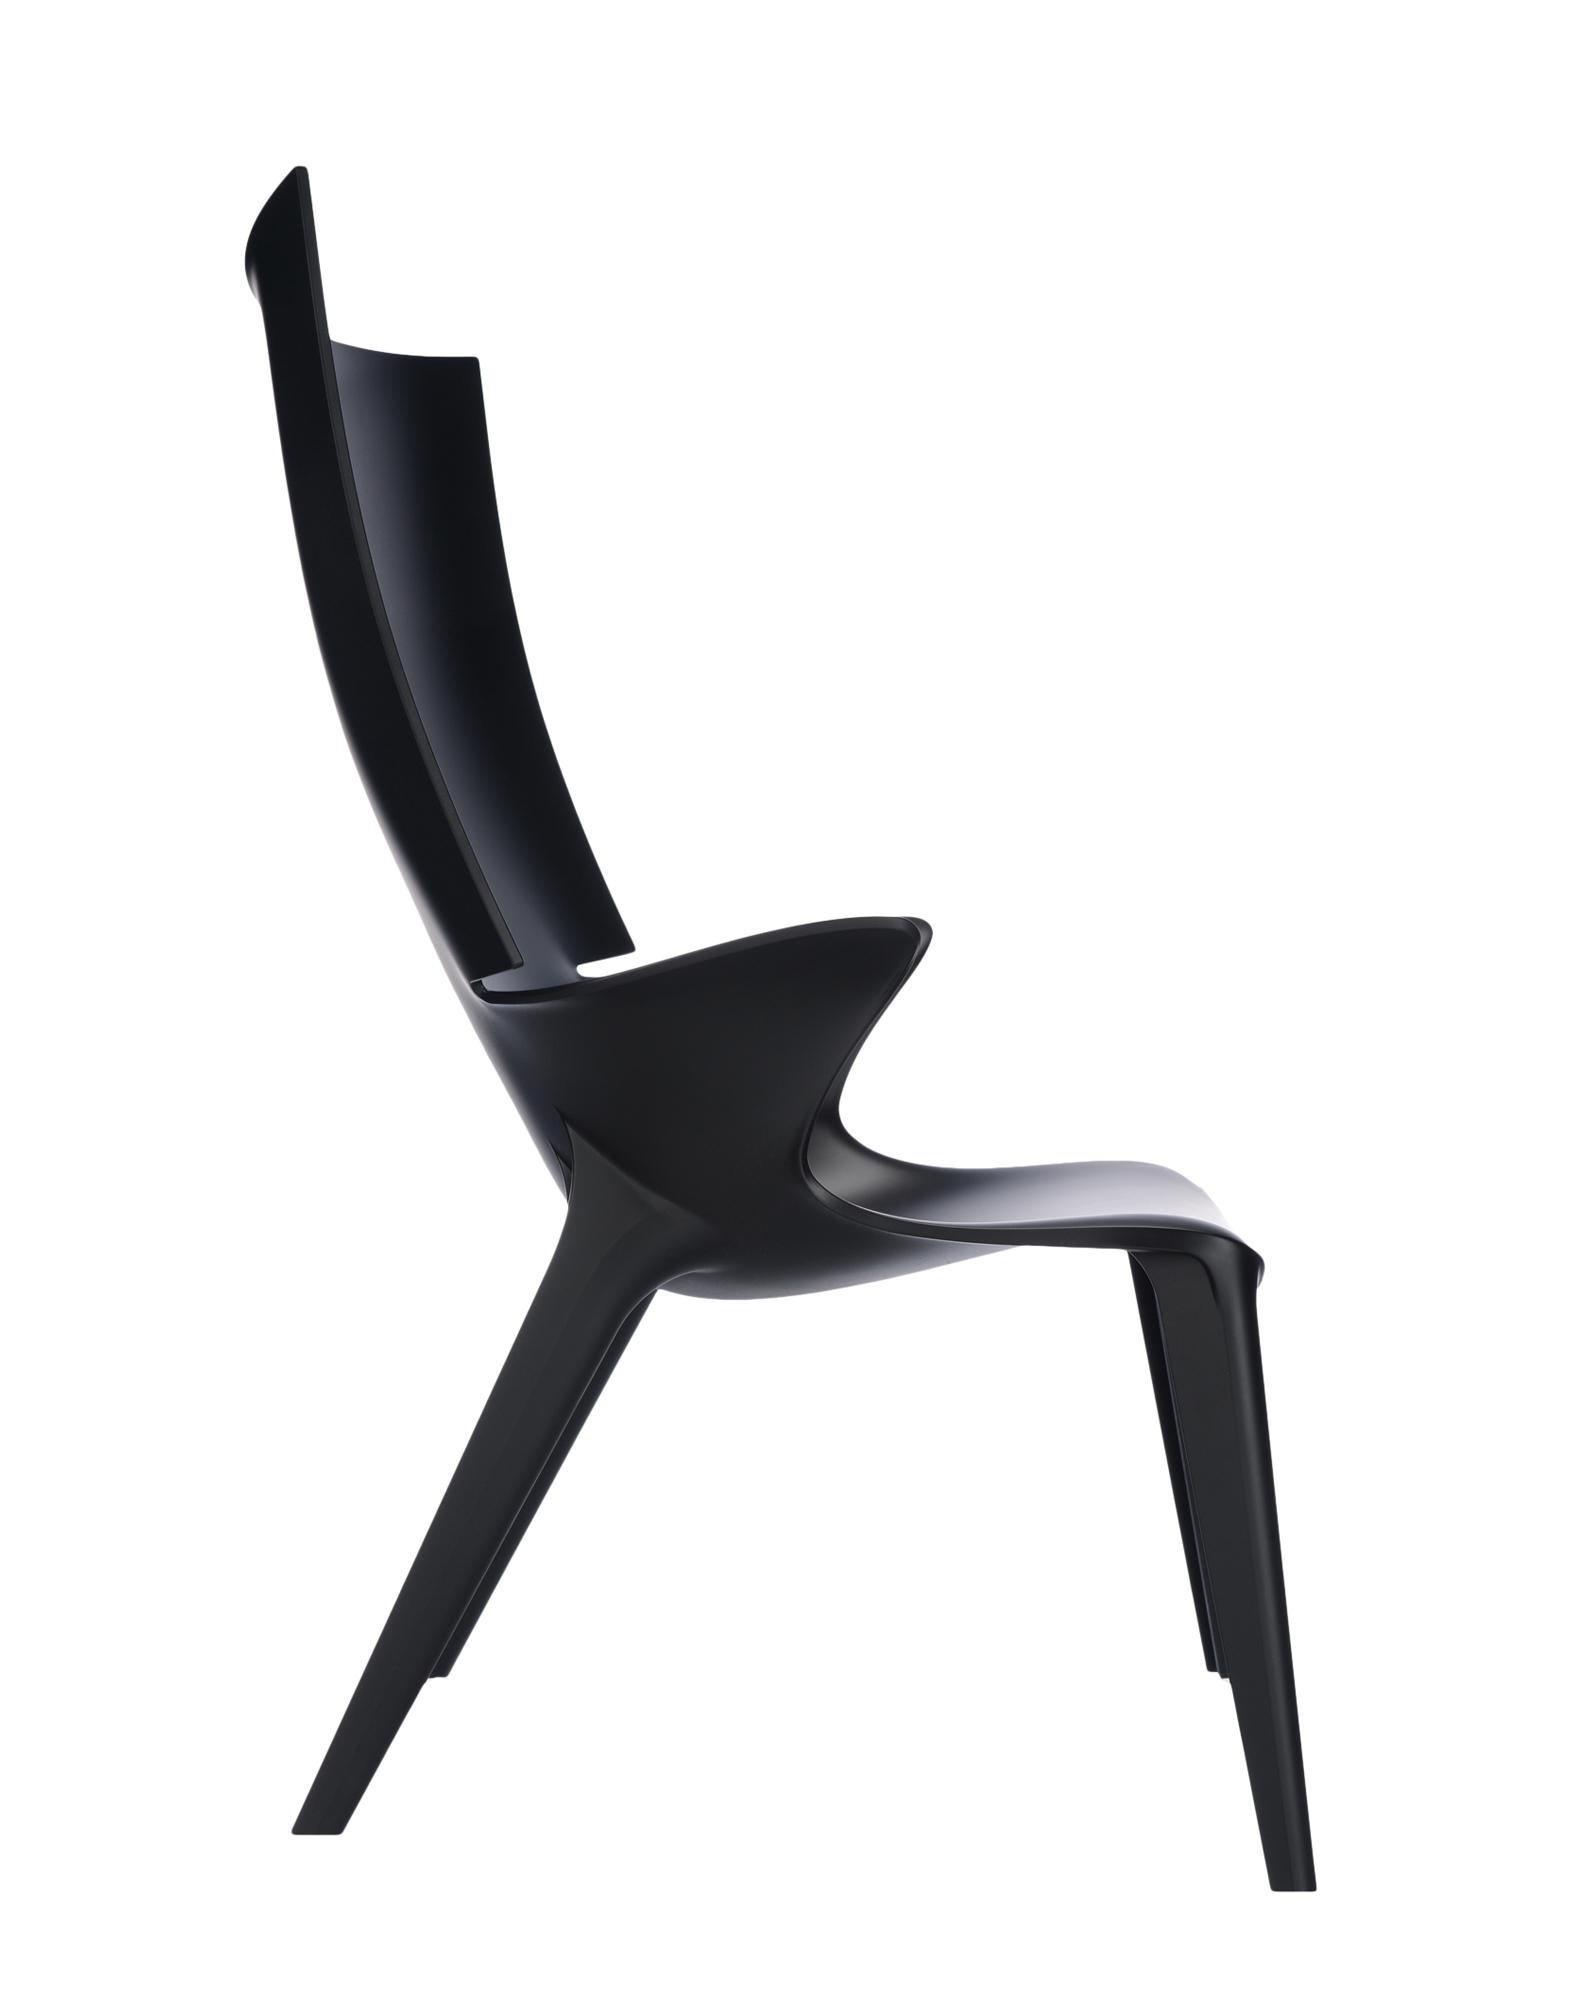 La collection Uncle conçue par Philippe Starck ajoute le fauteuil Uncle Jim. Le fauteuil fait écho aux lignes et à la sinuosité de l'Oncle Jack et se prête à un large éventail de besoins d'ameublement.

Fabriqué en : Polycarbonate. Utilisation en